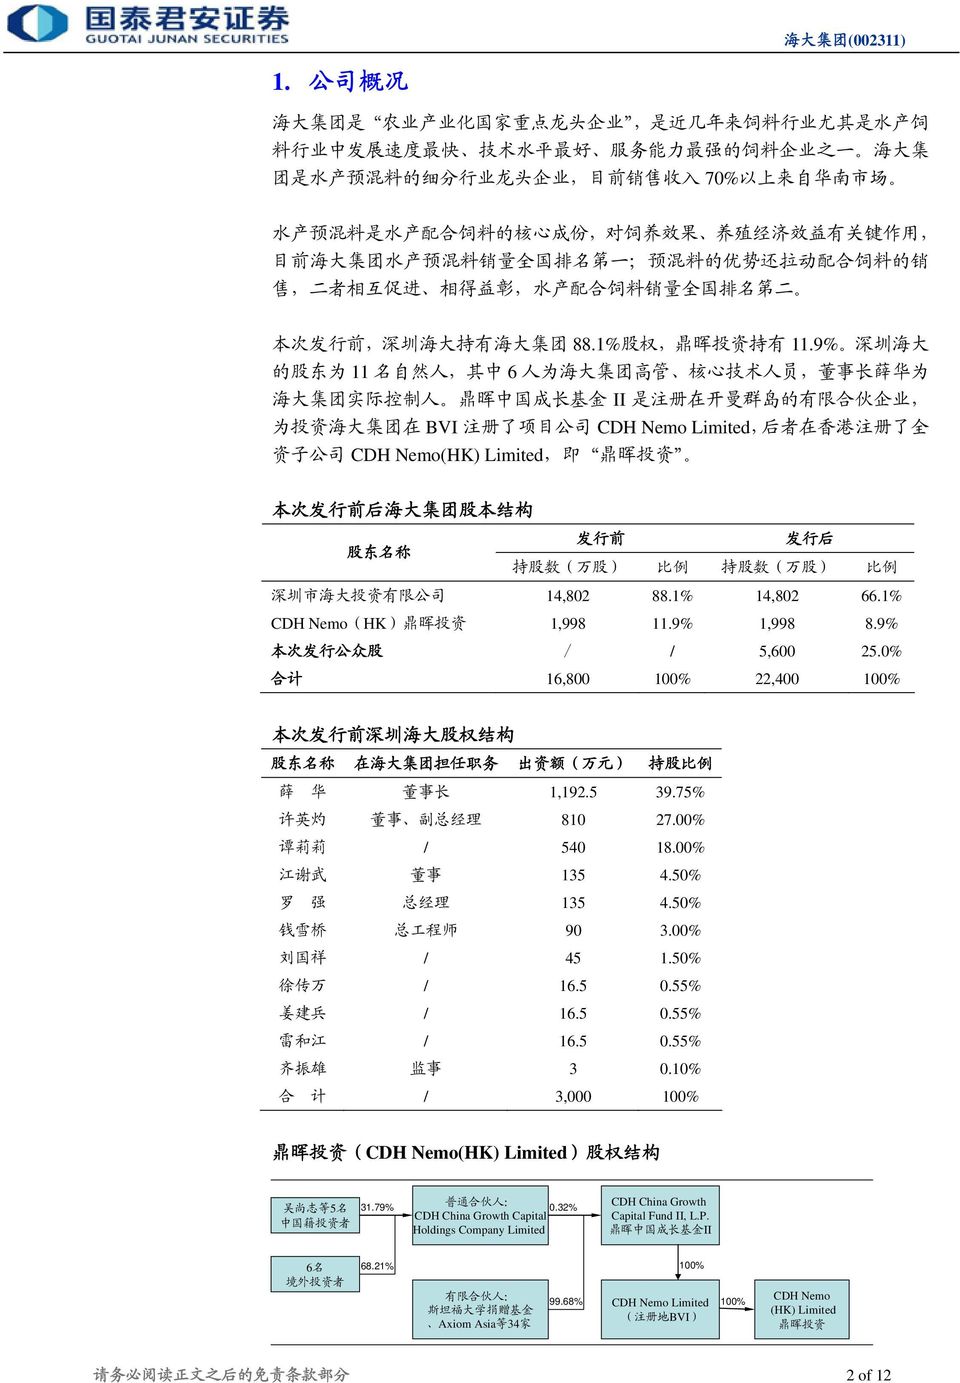 次 发 行 前, 深 圳 海 大 持 有 海 大 集 团 88.1% 股 权, 鼎 晖 投 资 持 有 11.